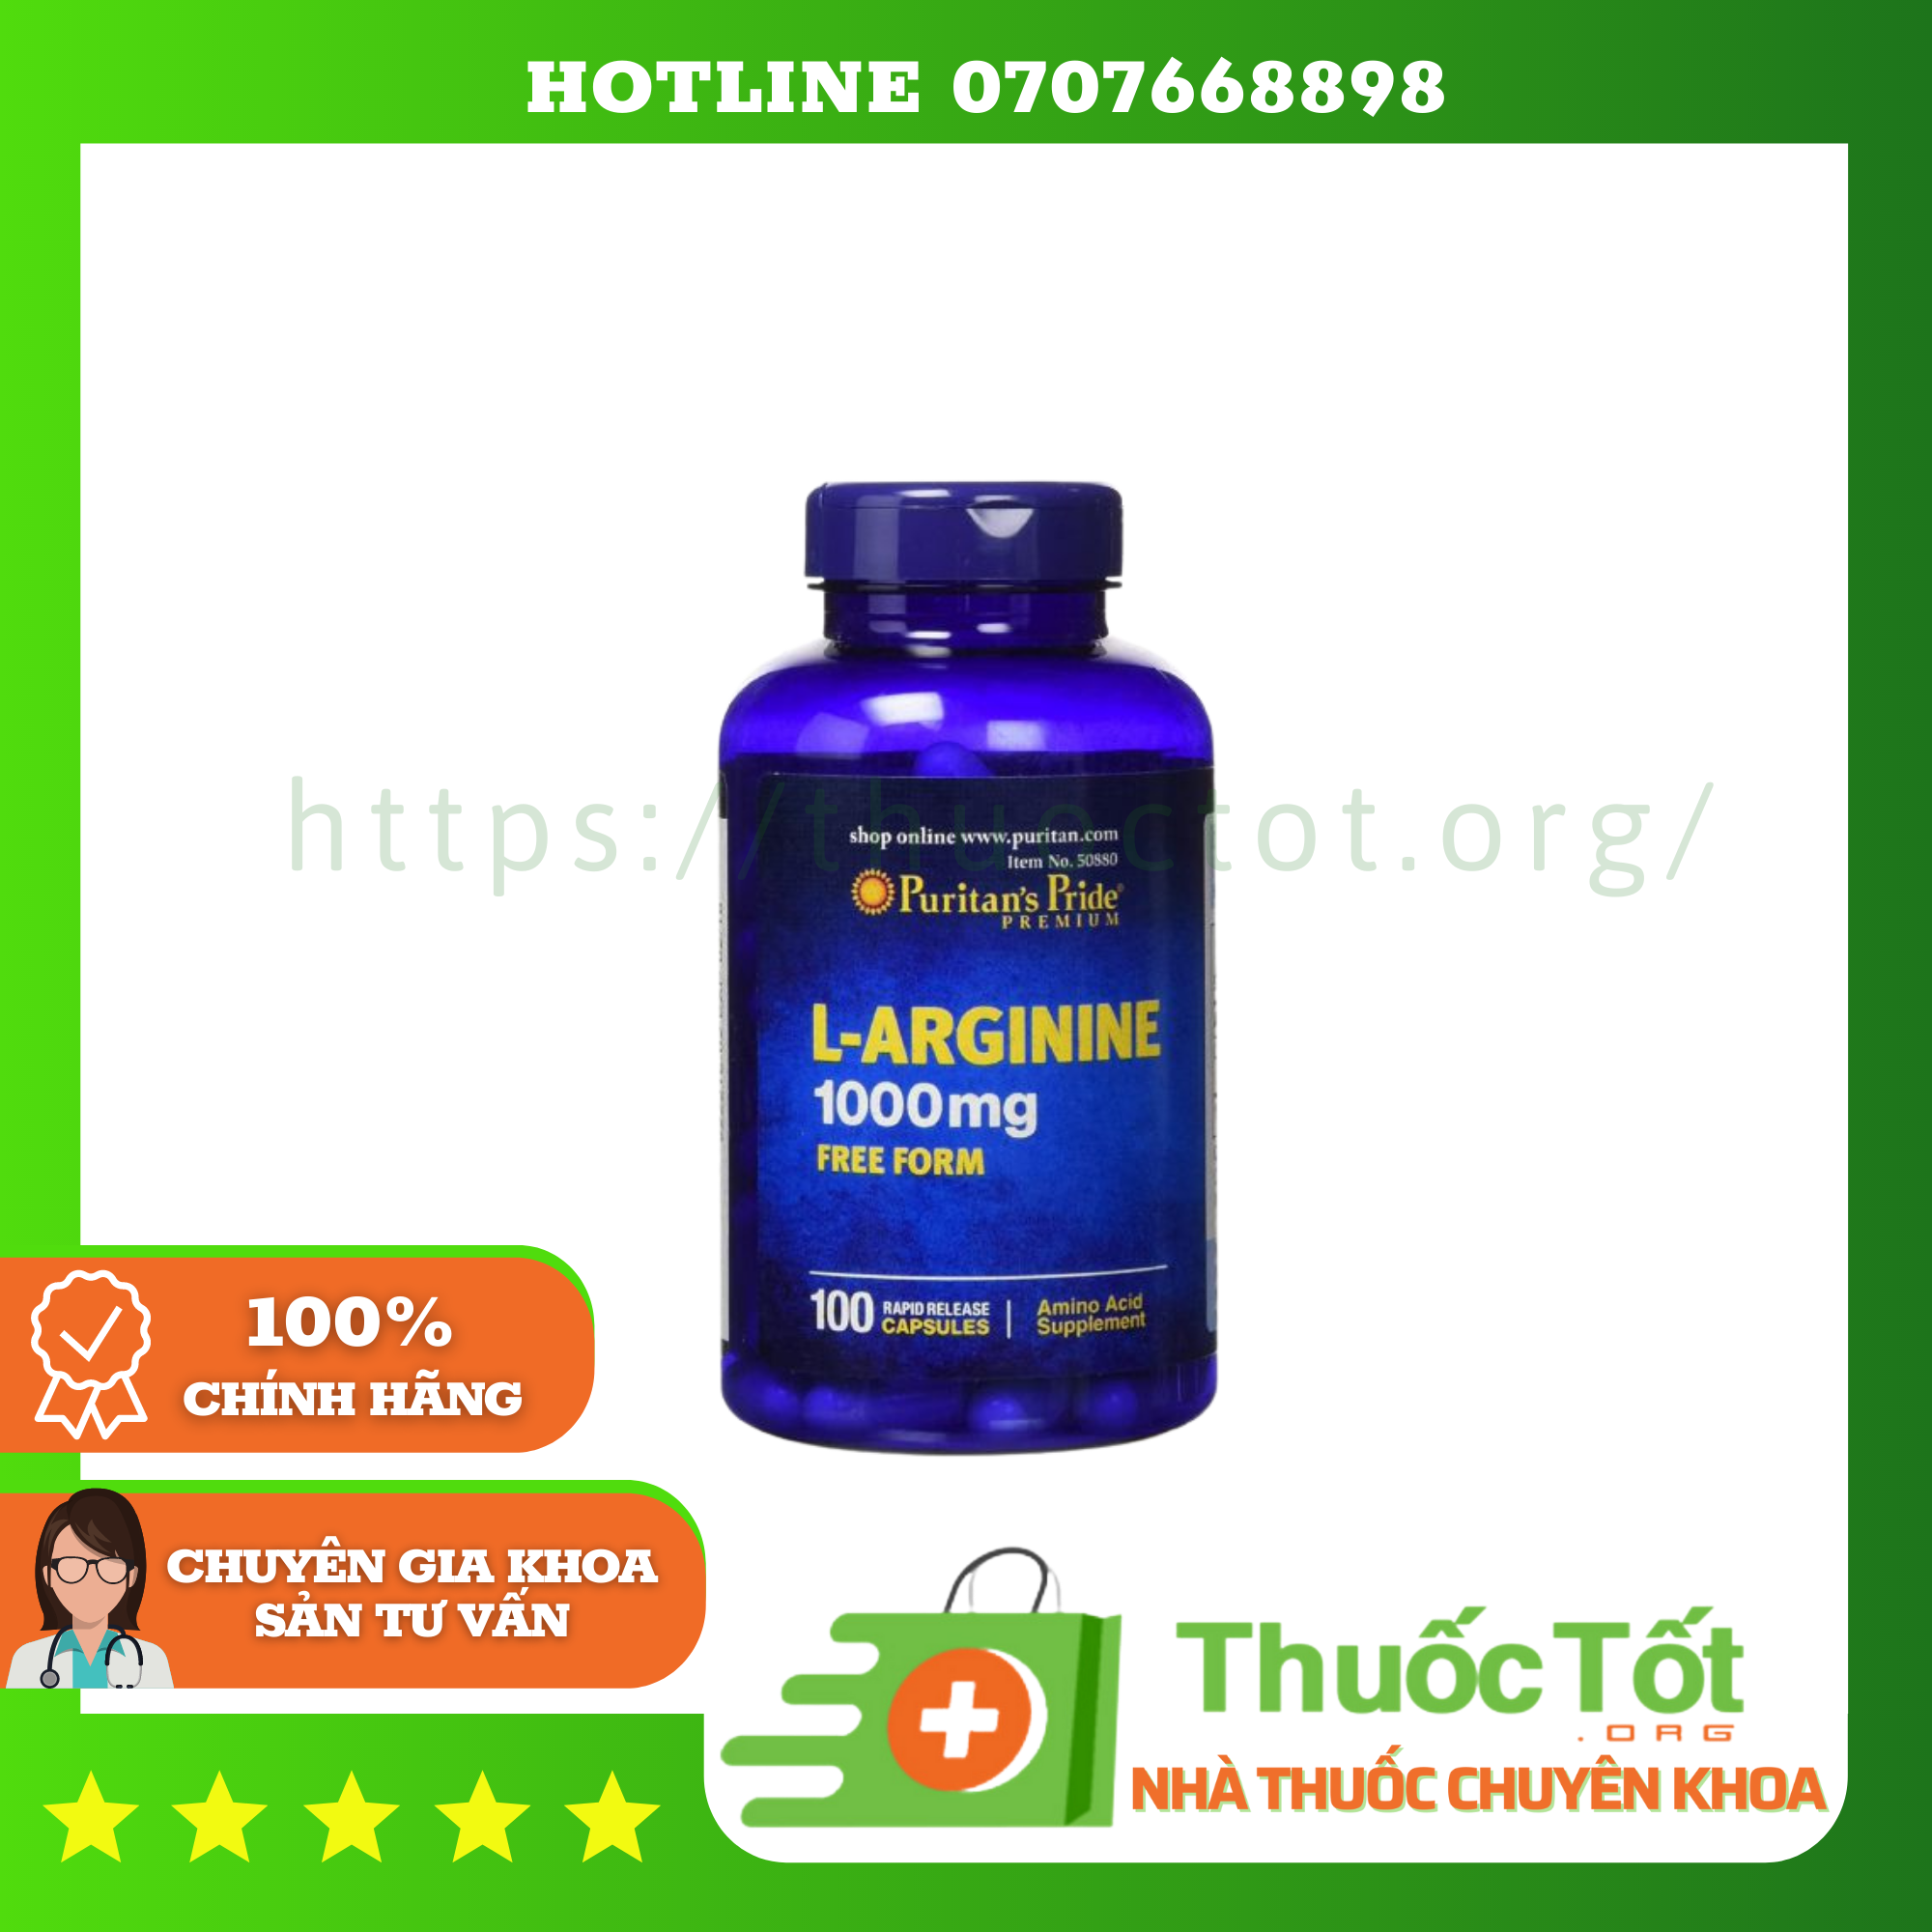 L-arginine 1000mg - Viên uống giải độc gan, cải thiện chức năng gan